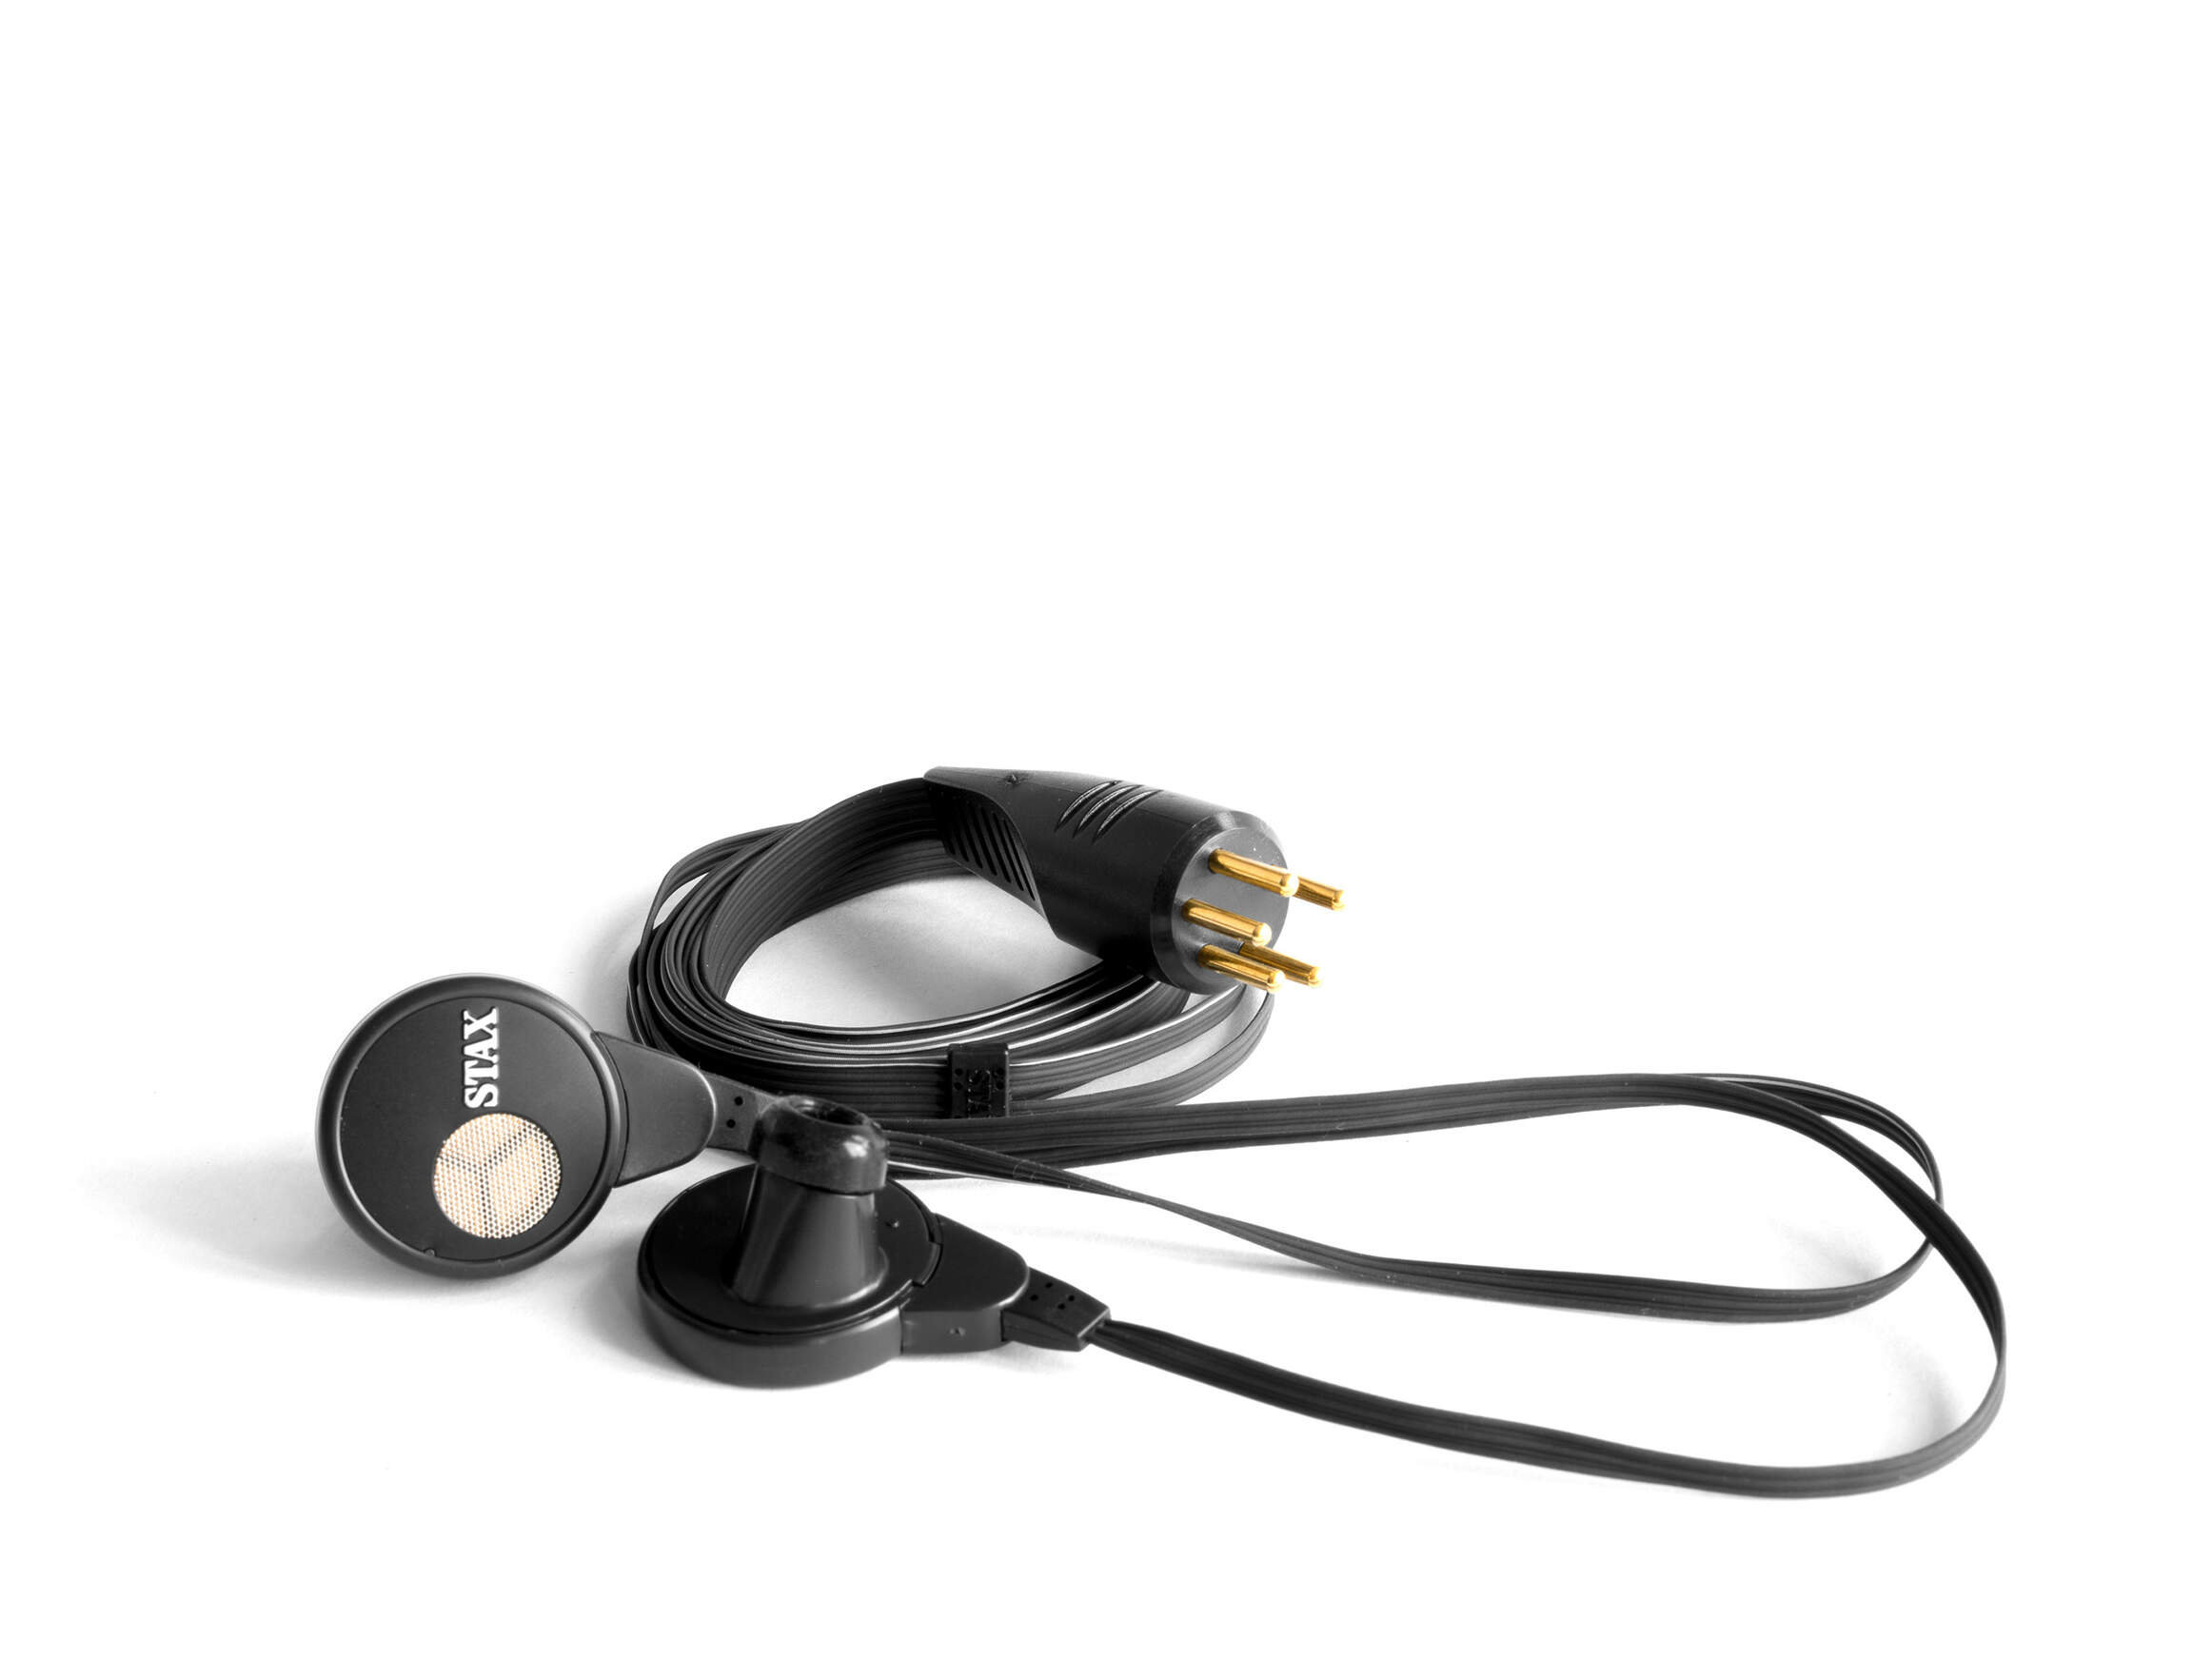 Stax SR-003MK2 elektrostatischer In-Ear-Kopfhörer entdecken